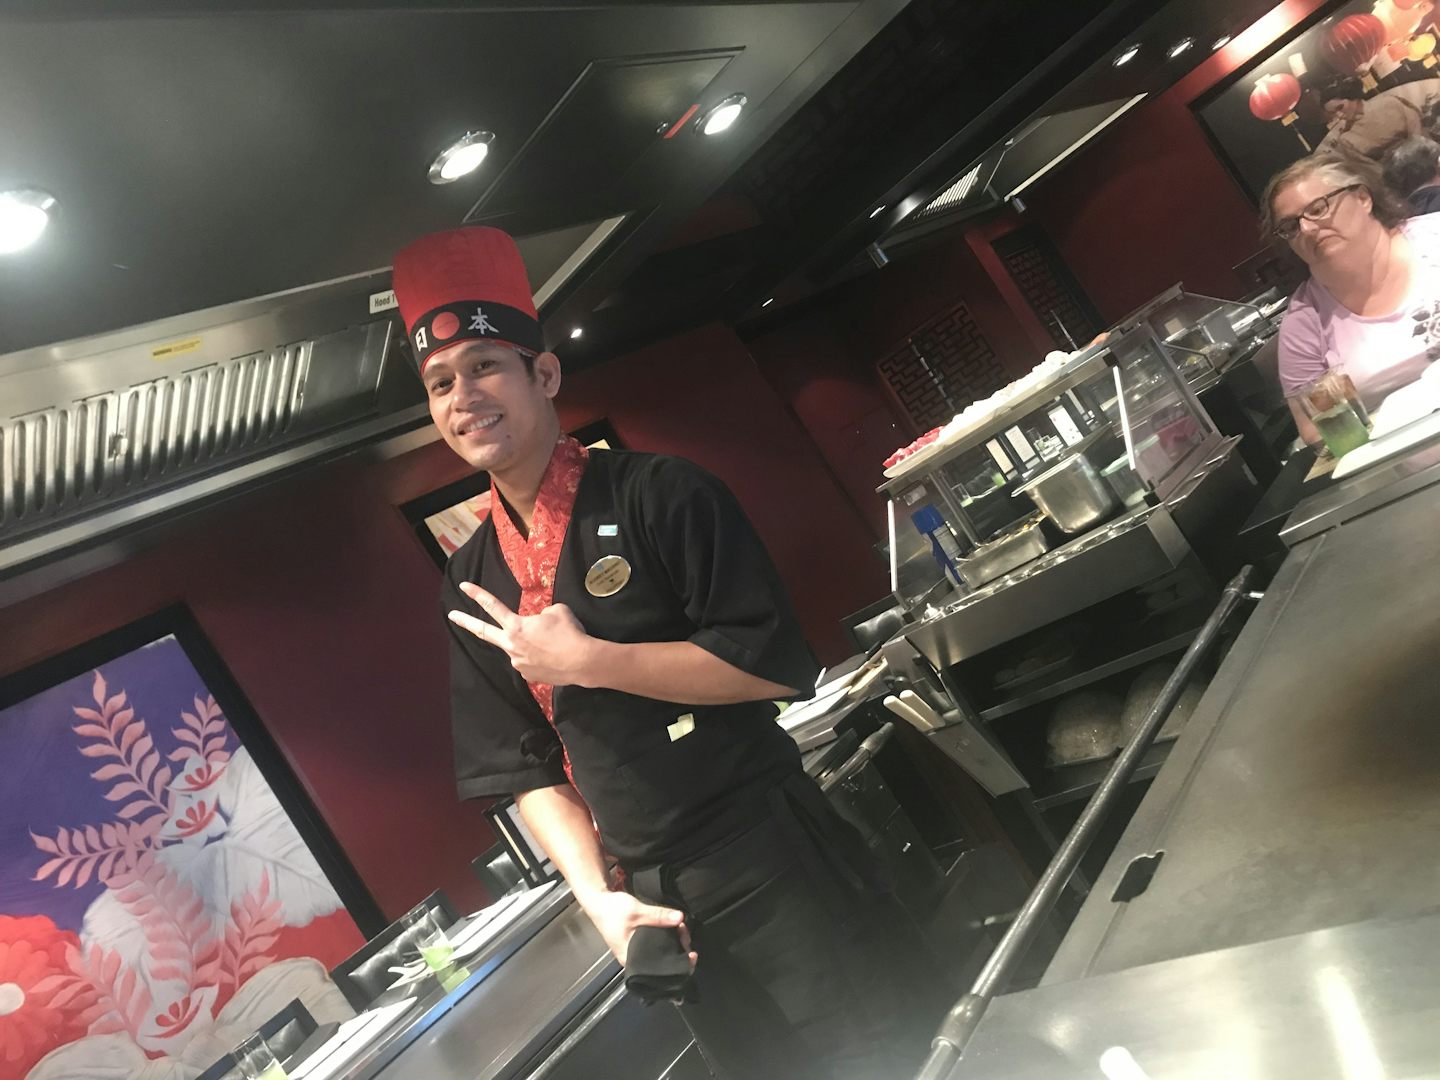 Teppanyaki Chef